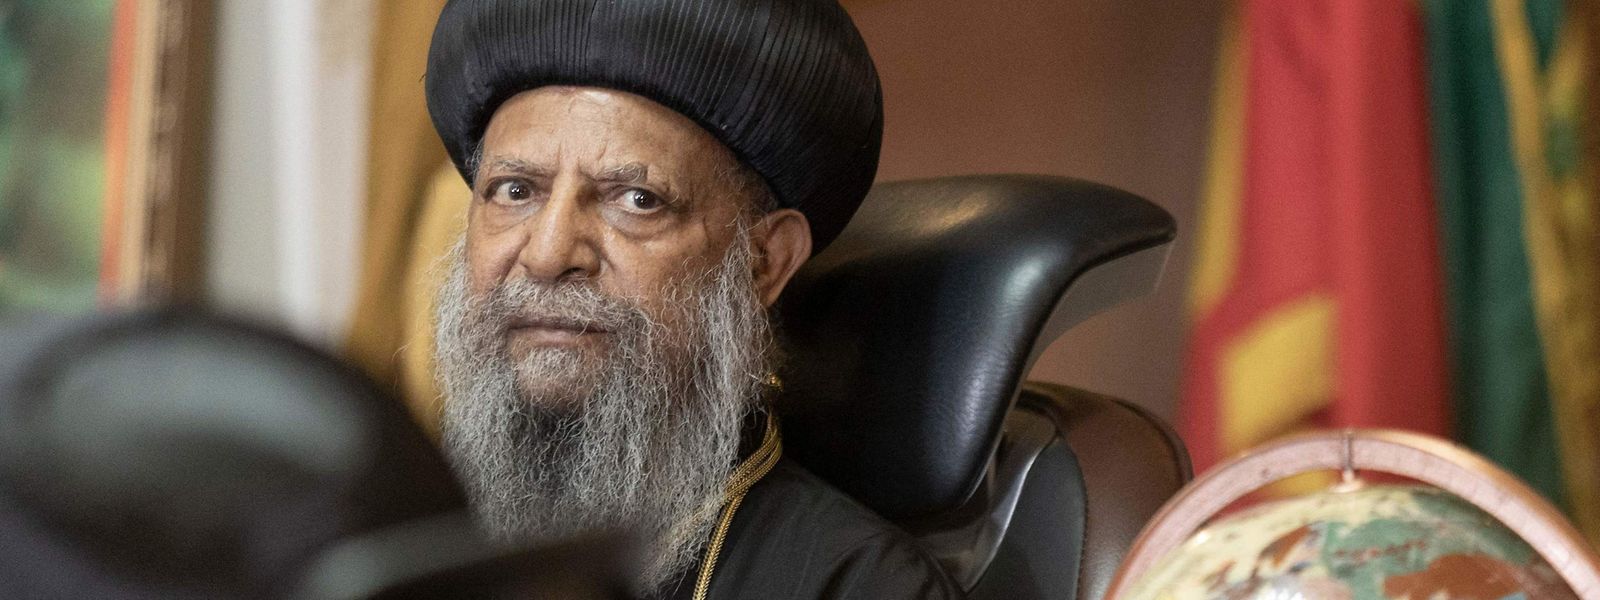 Abune Mathias ist Patriarch der Äthiopisch-Orthodoxen Tewahedo-Kirche.